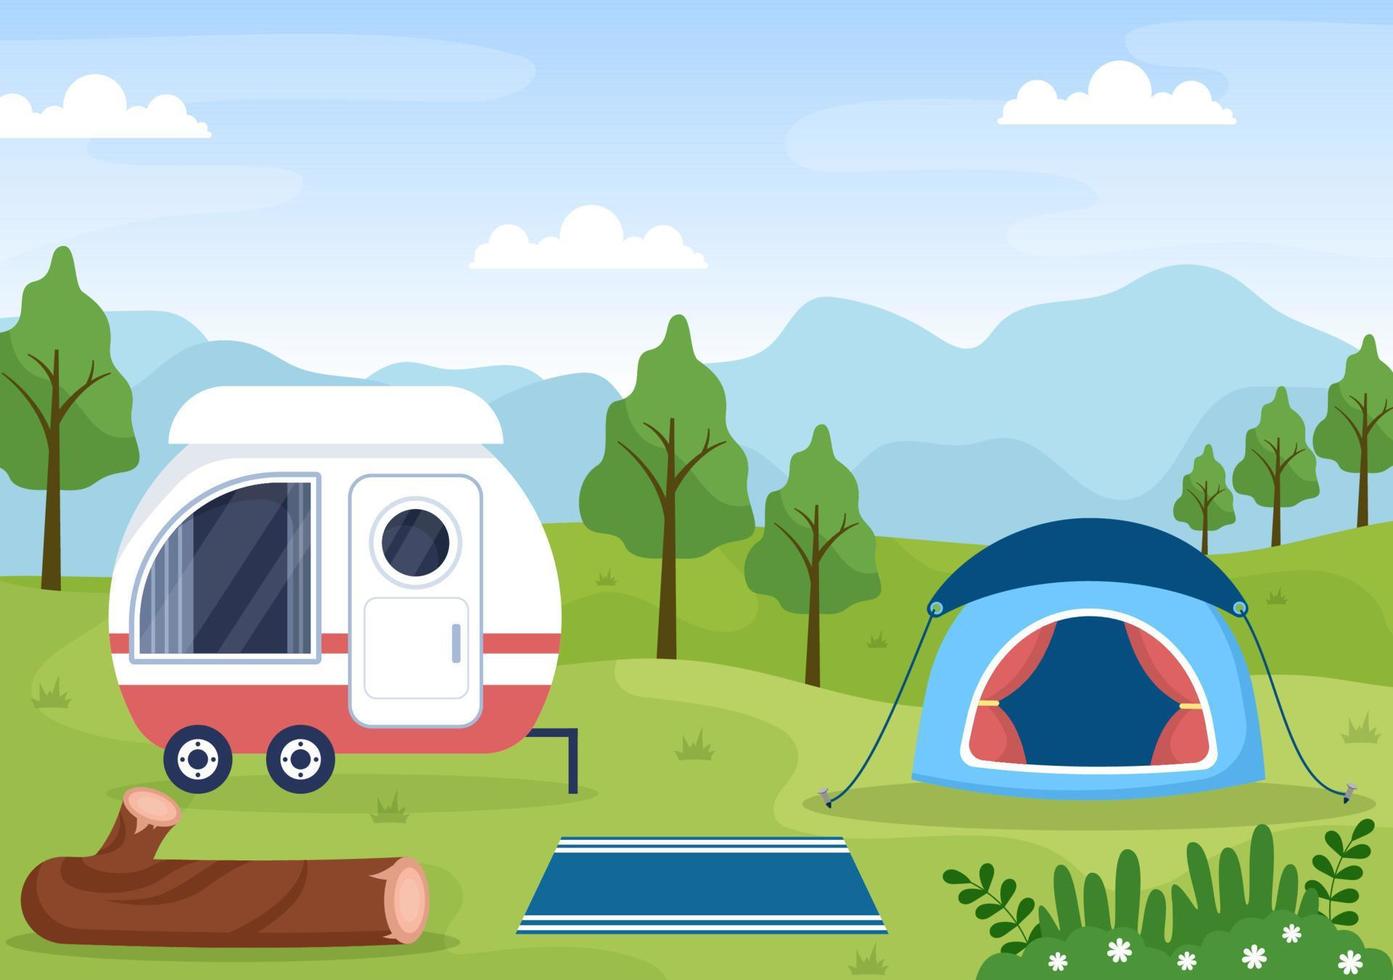 kampeerauto achtergrondillustratie met tent, kampvuur, brandhout, camperauto en zijn uitrusting voor mensen op avontuurlijke tochten of vakanties in het bos of de bergen vector